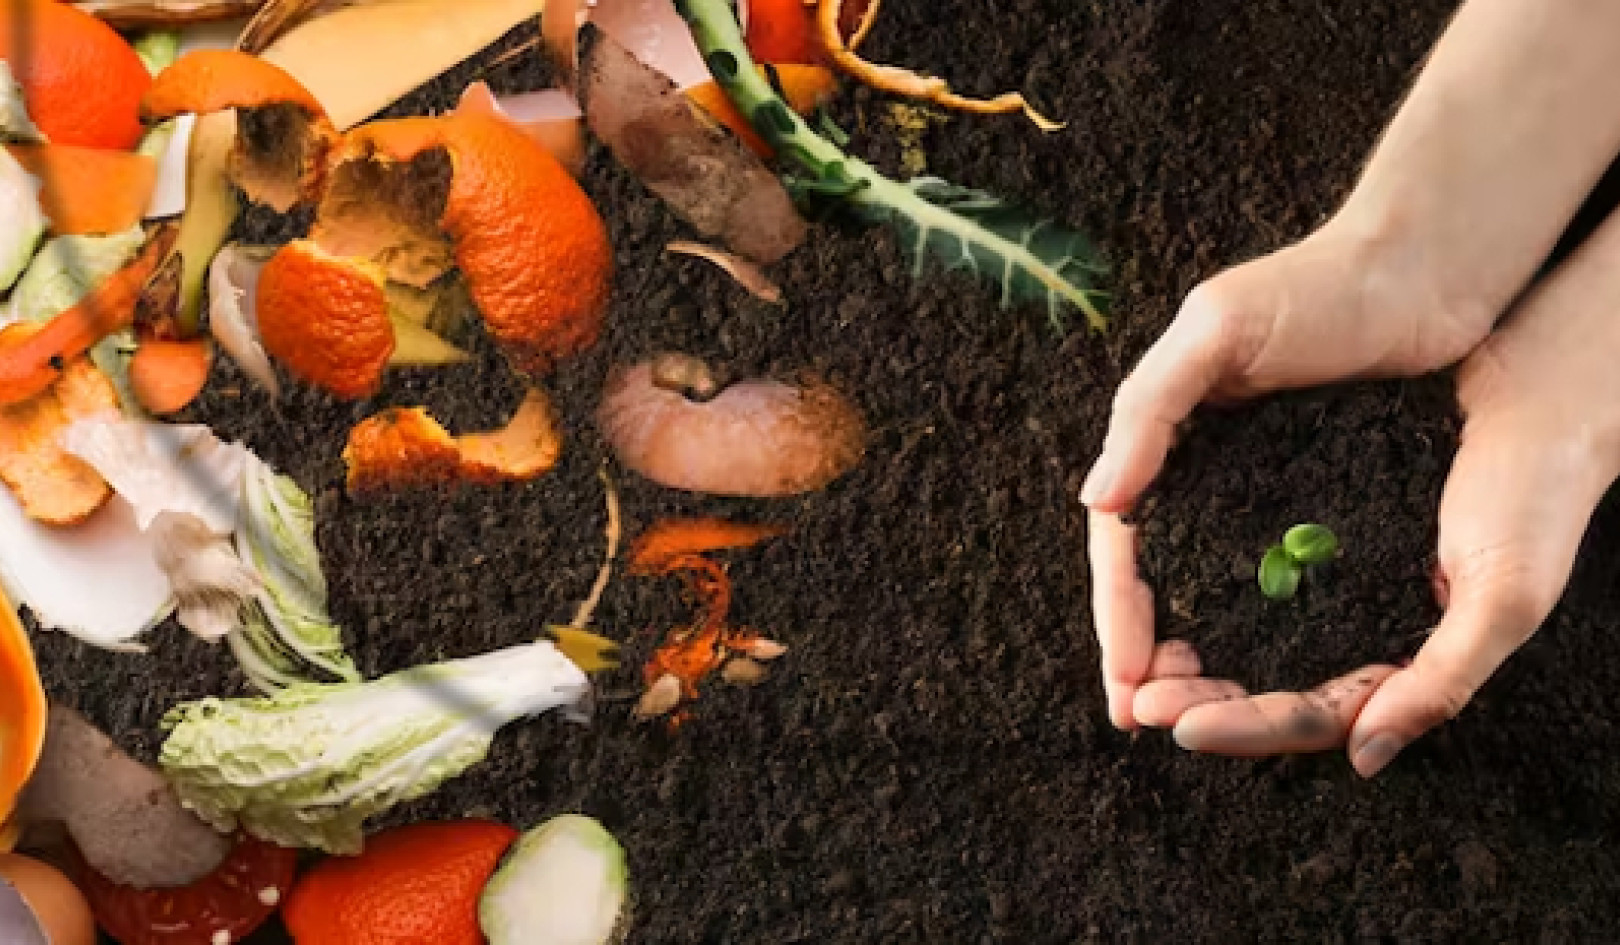 De los residuos a la riqueza: por qué el compostaje de los residuos de alimentos supera a los vertederos